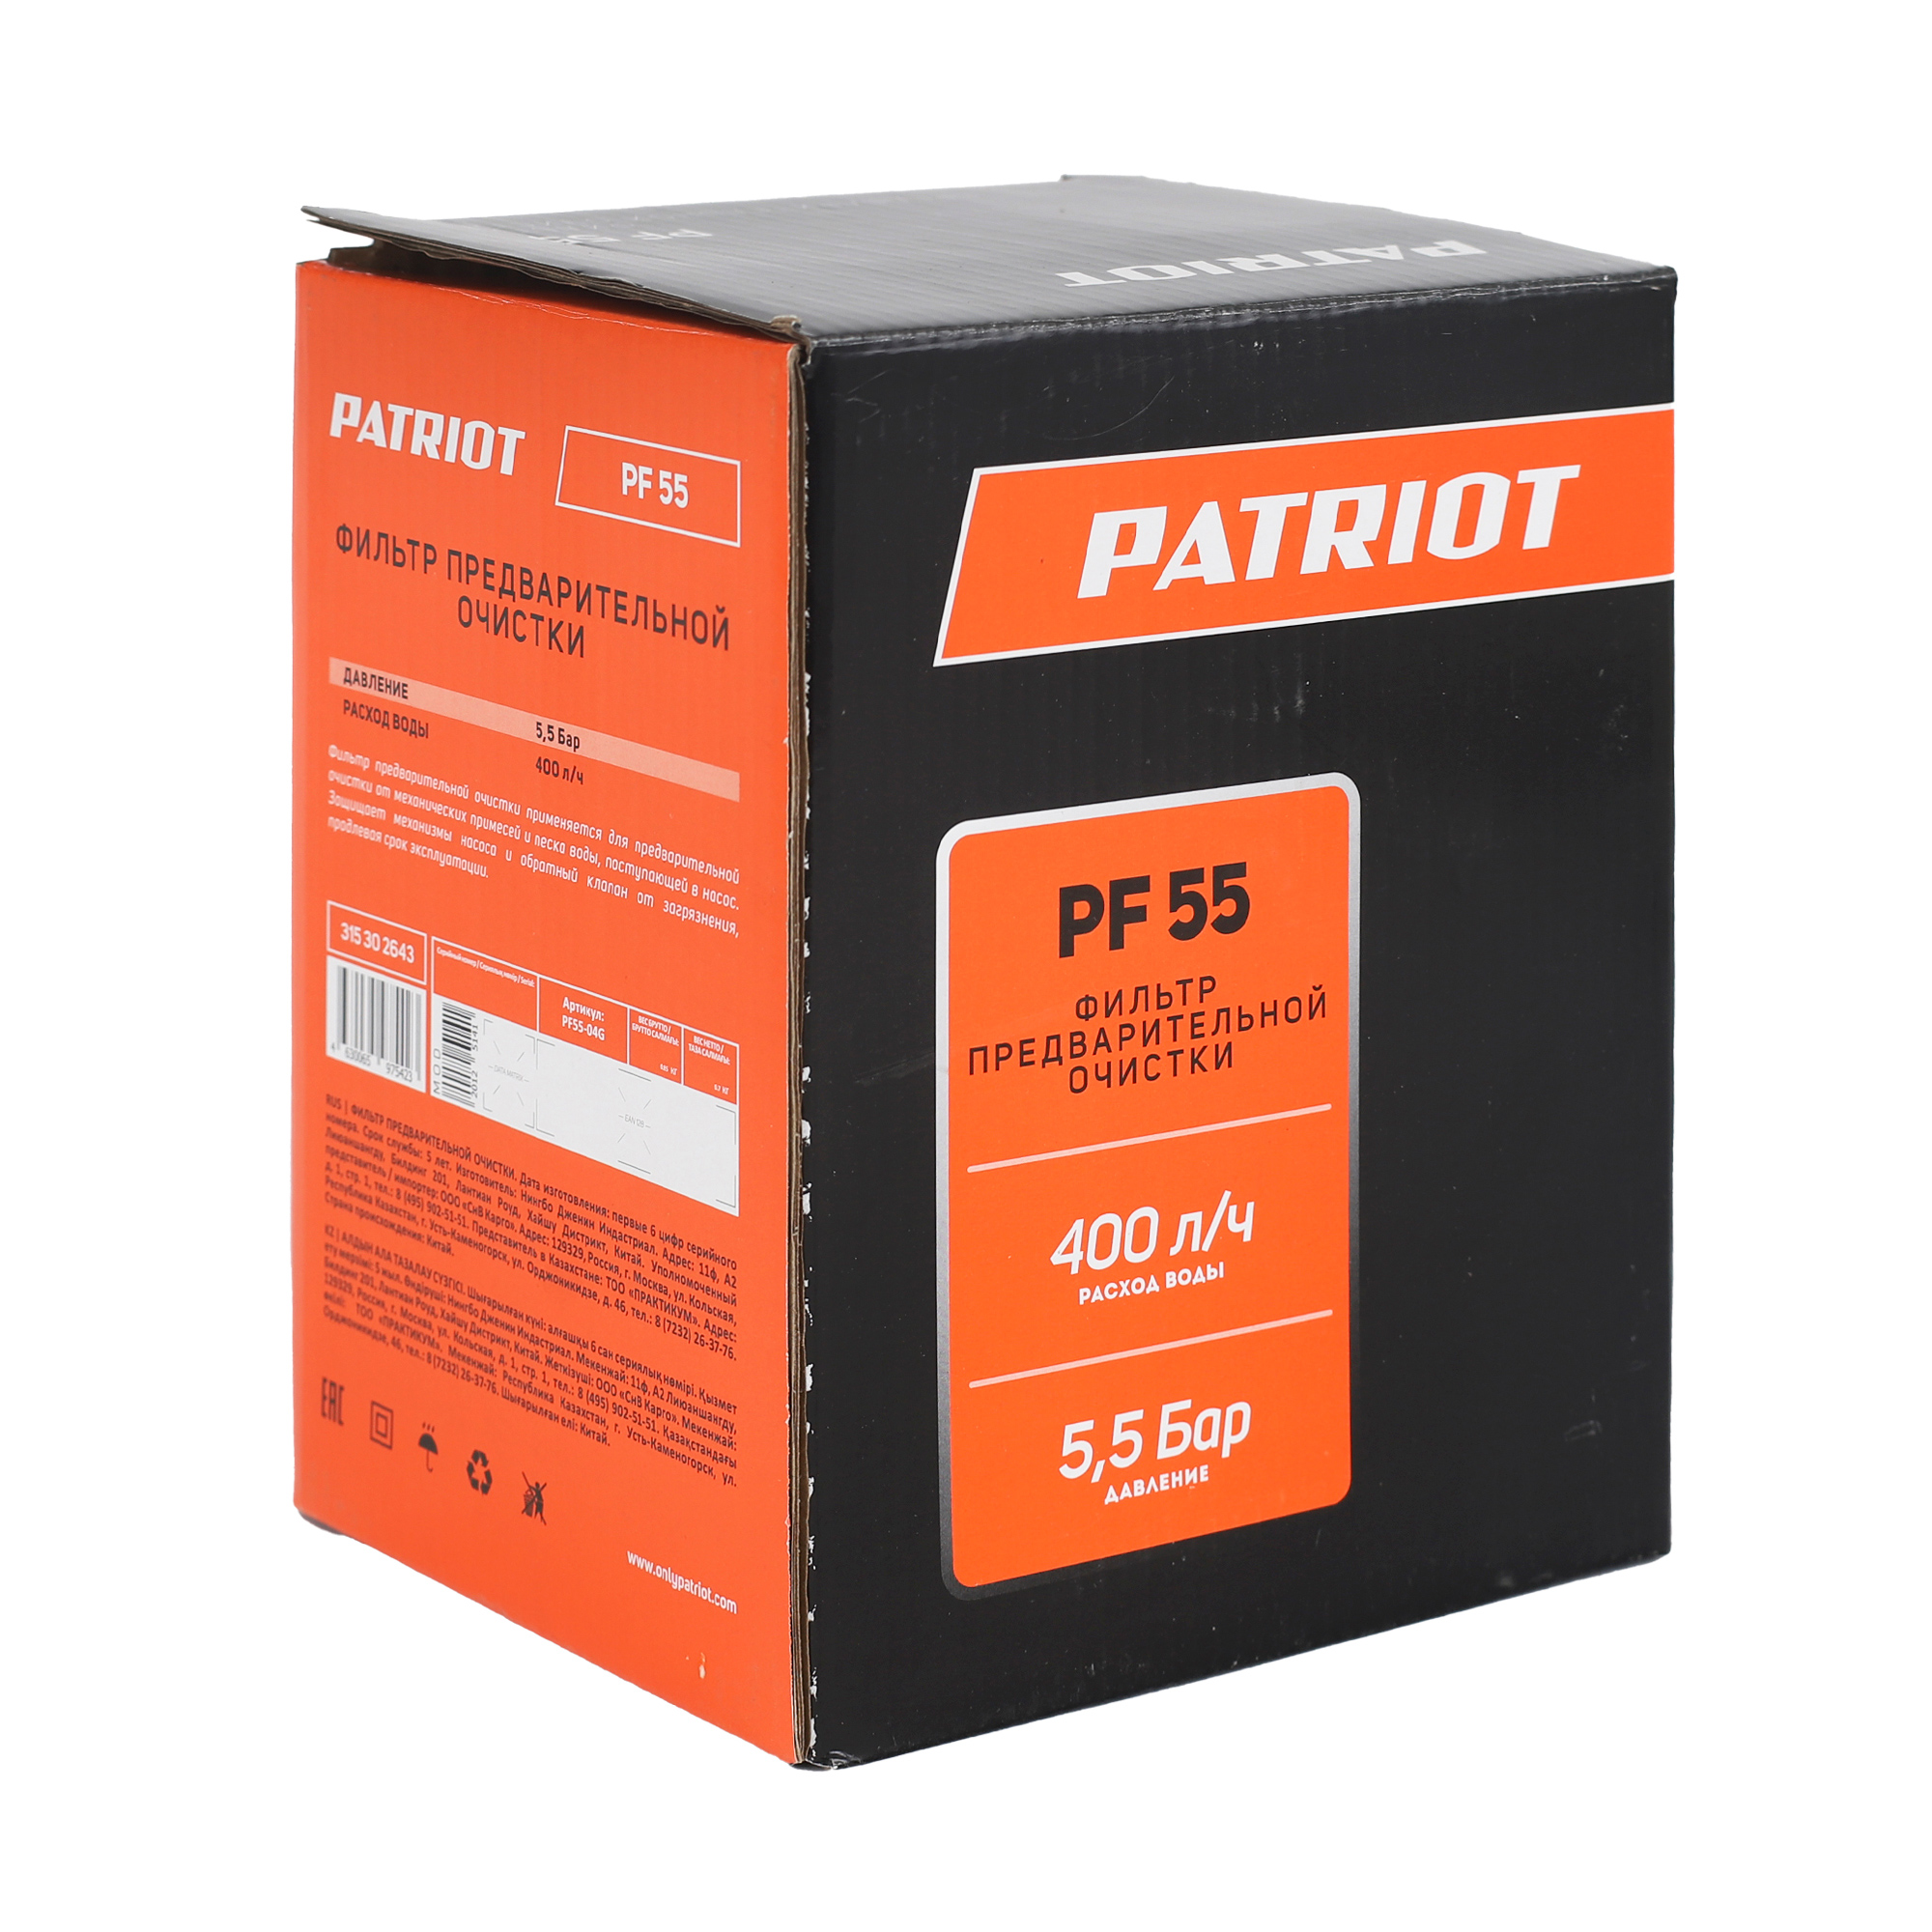 Фильтр предварительной очистки pf-55 (1/6) "patriot" 315302643